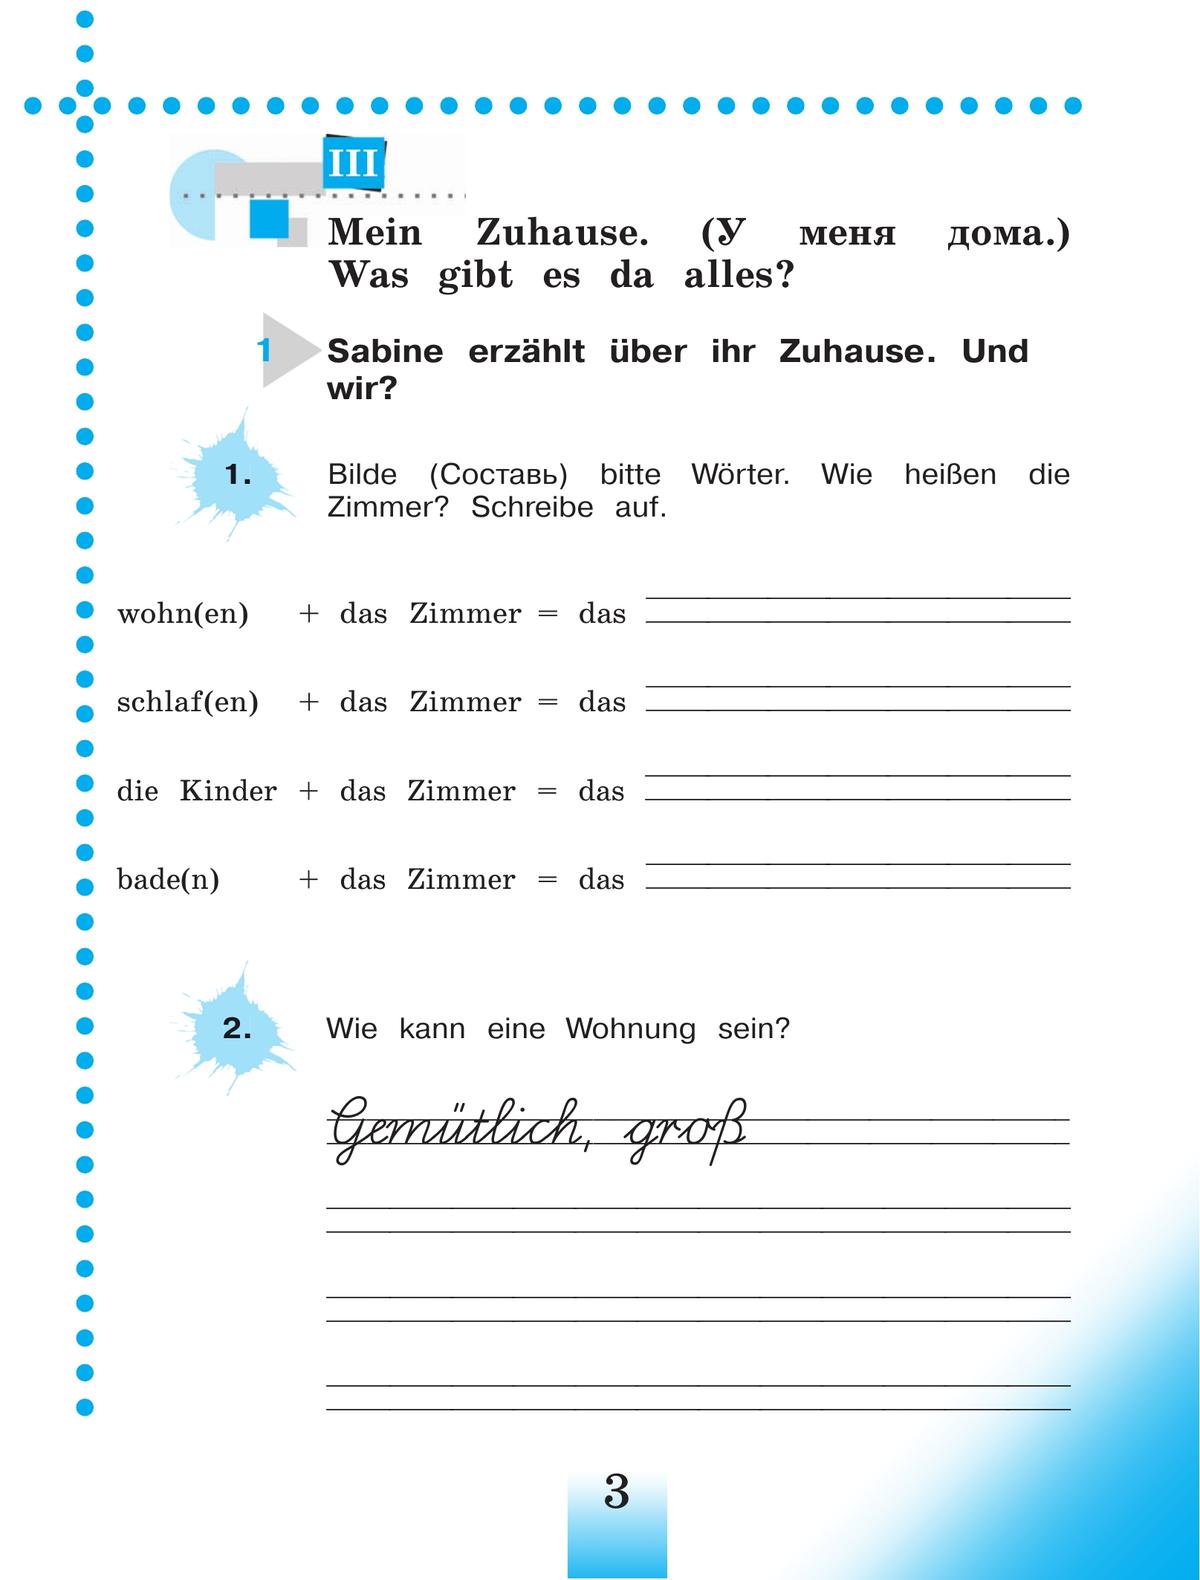 Немецкий язык. Рабочая тетрадь. 4 класс. В 2 ч. Часть Б 8